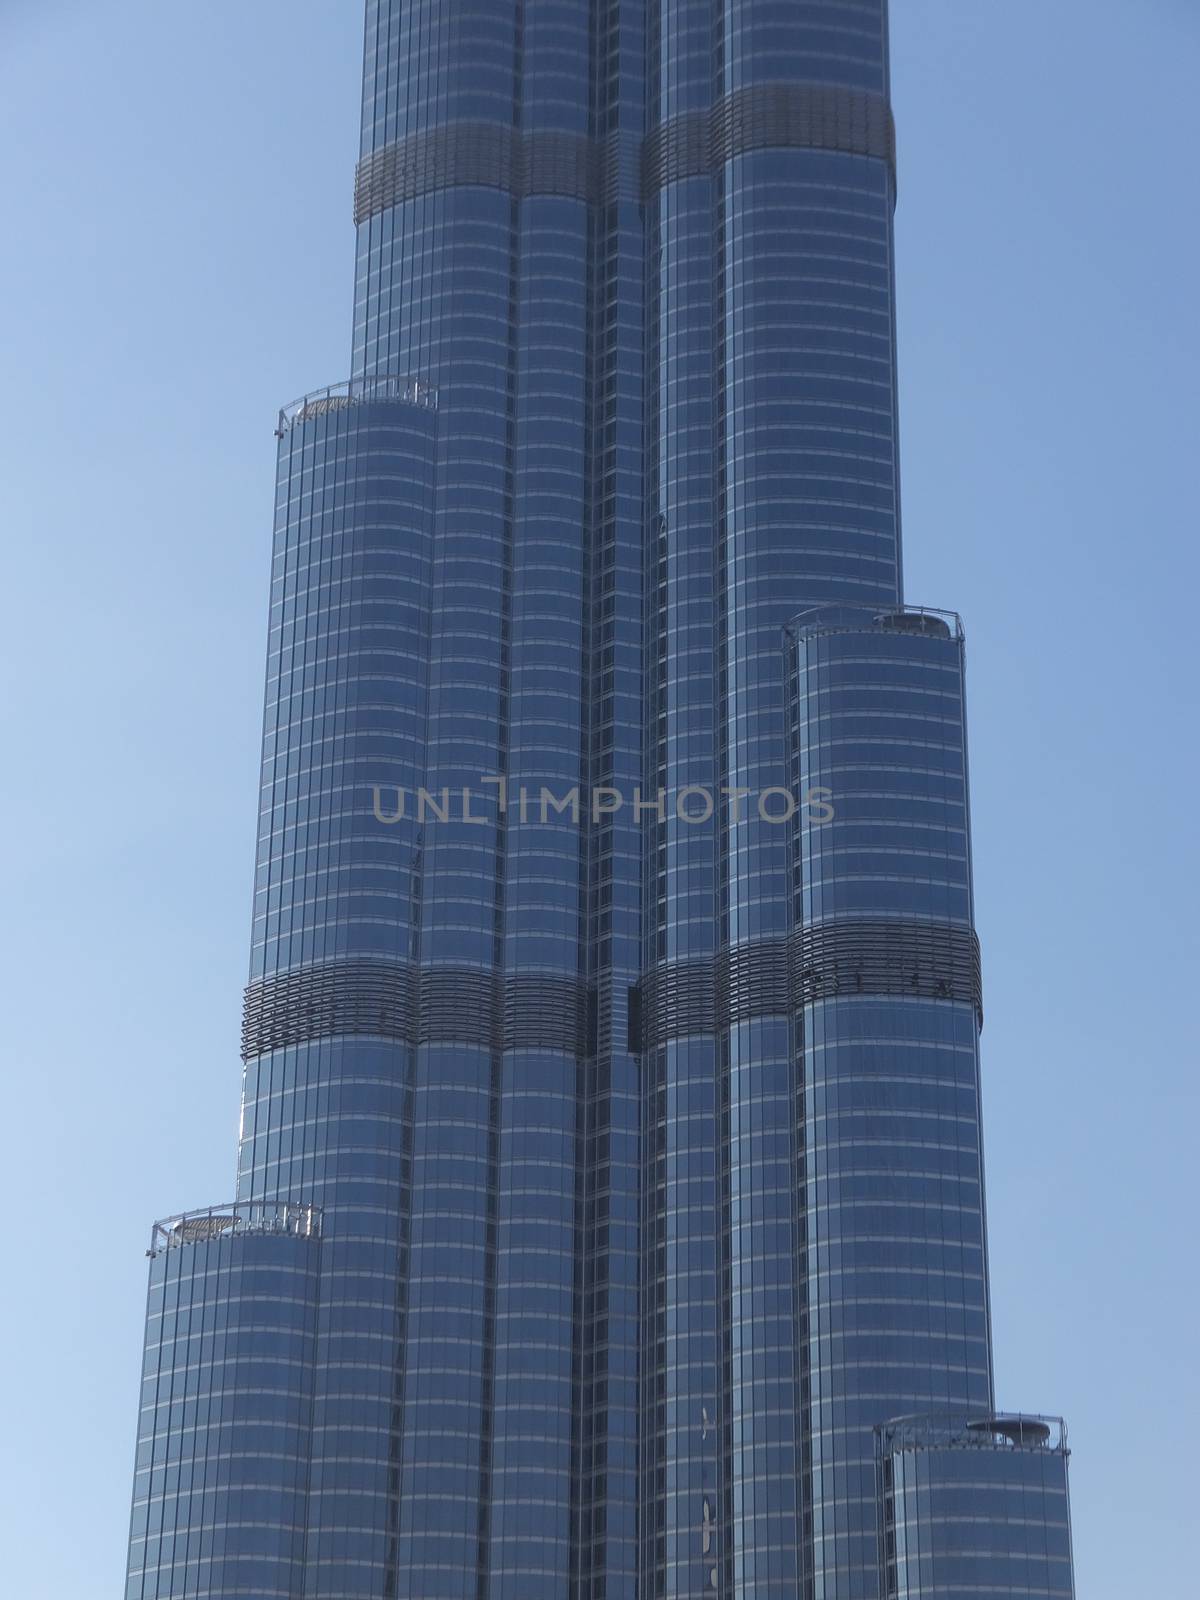 Burj Khalifa in Dubai, UAE by sainaniritu